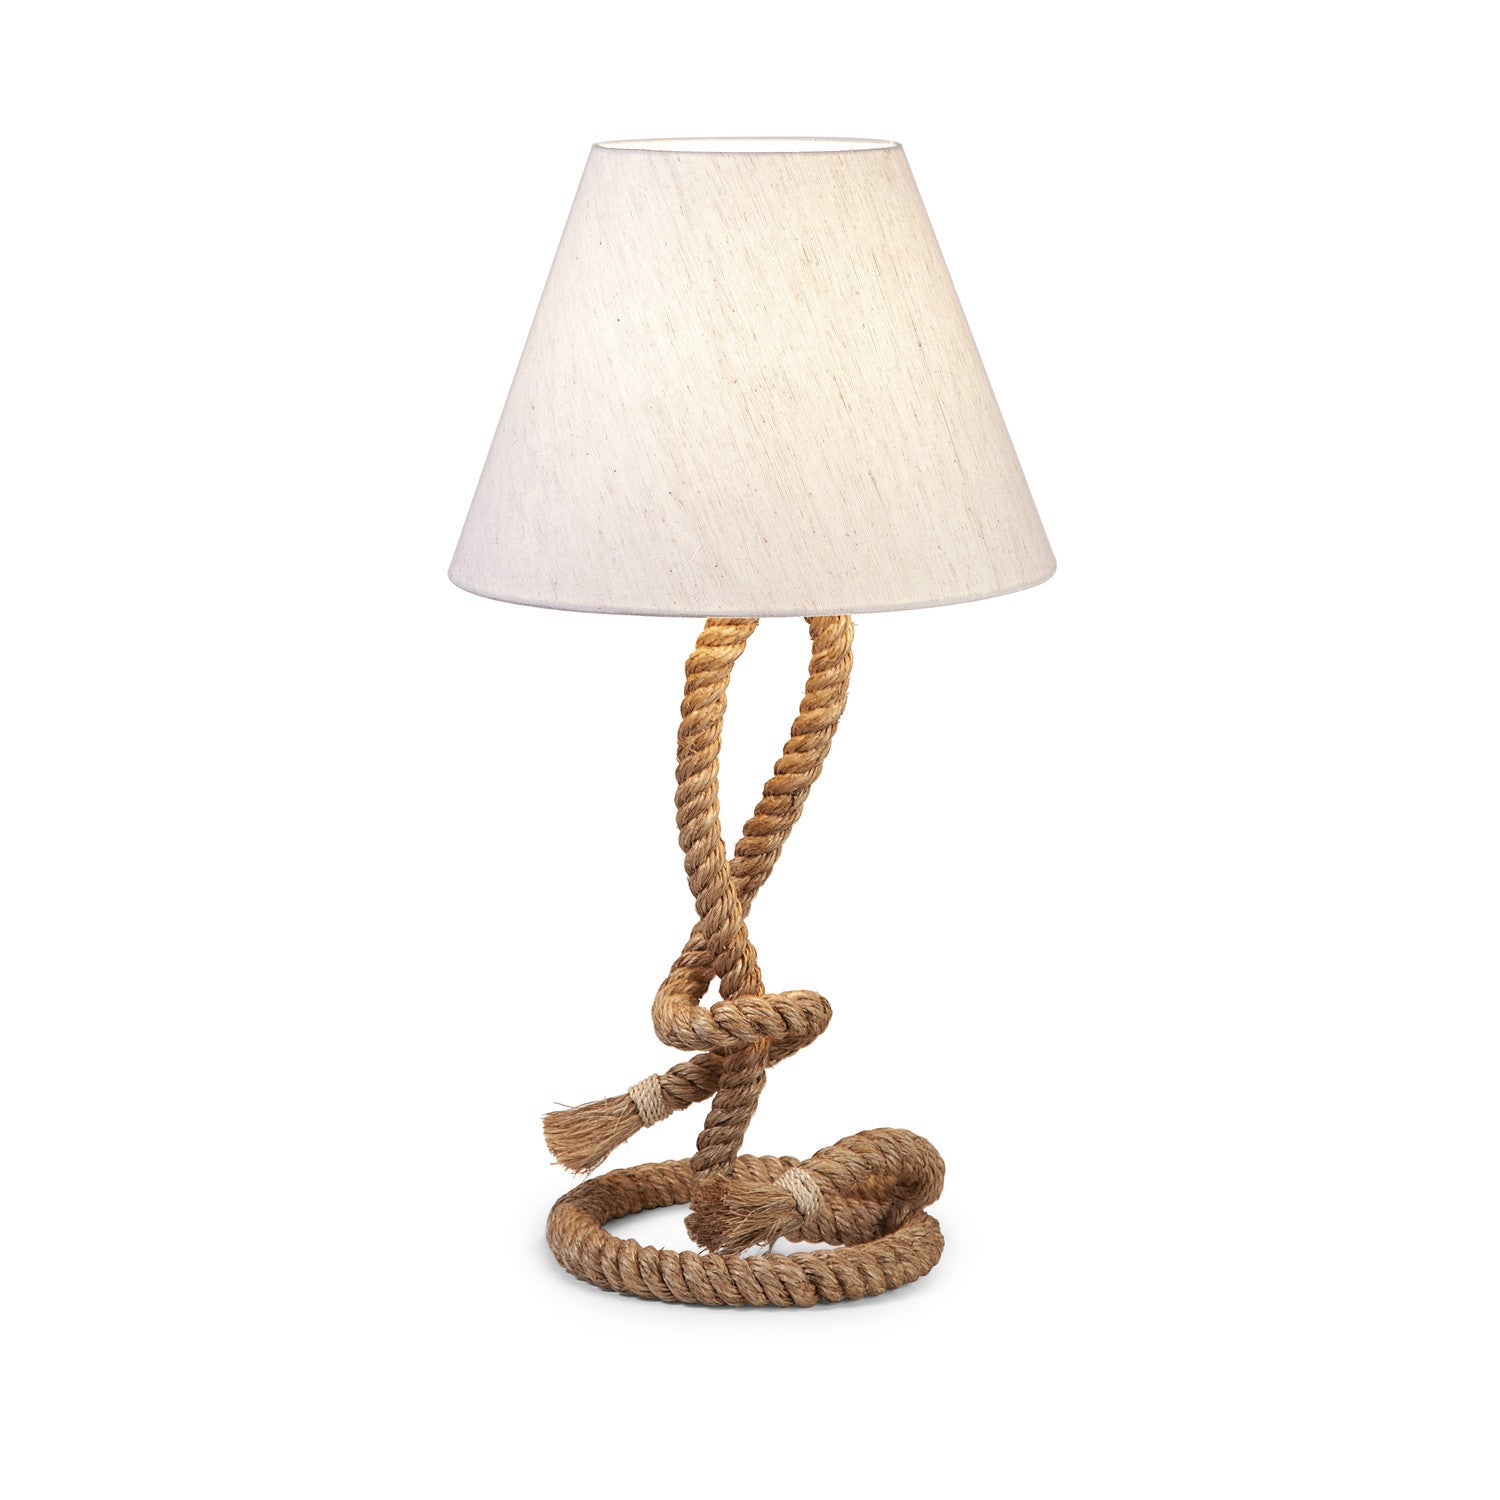 Rustic Rope Table Lamp